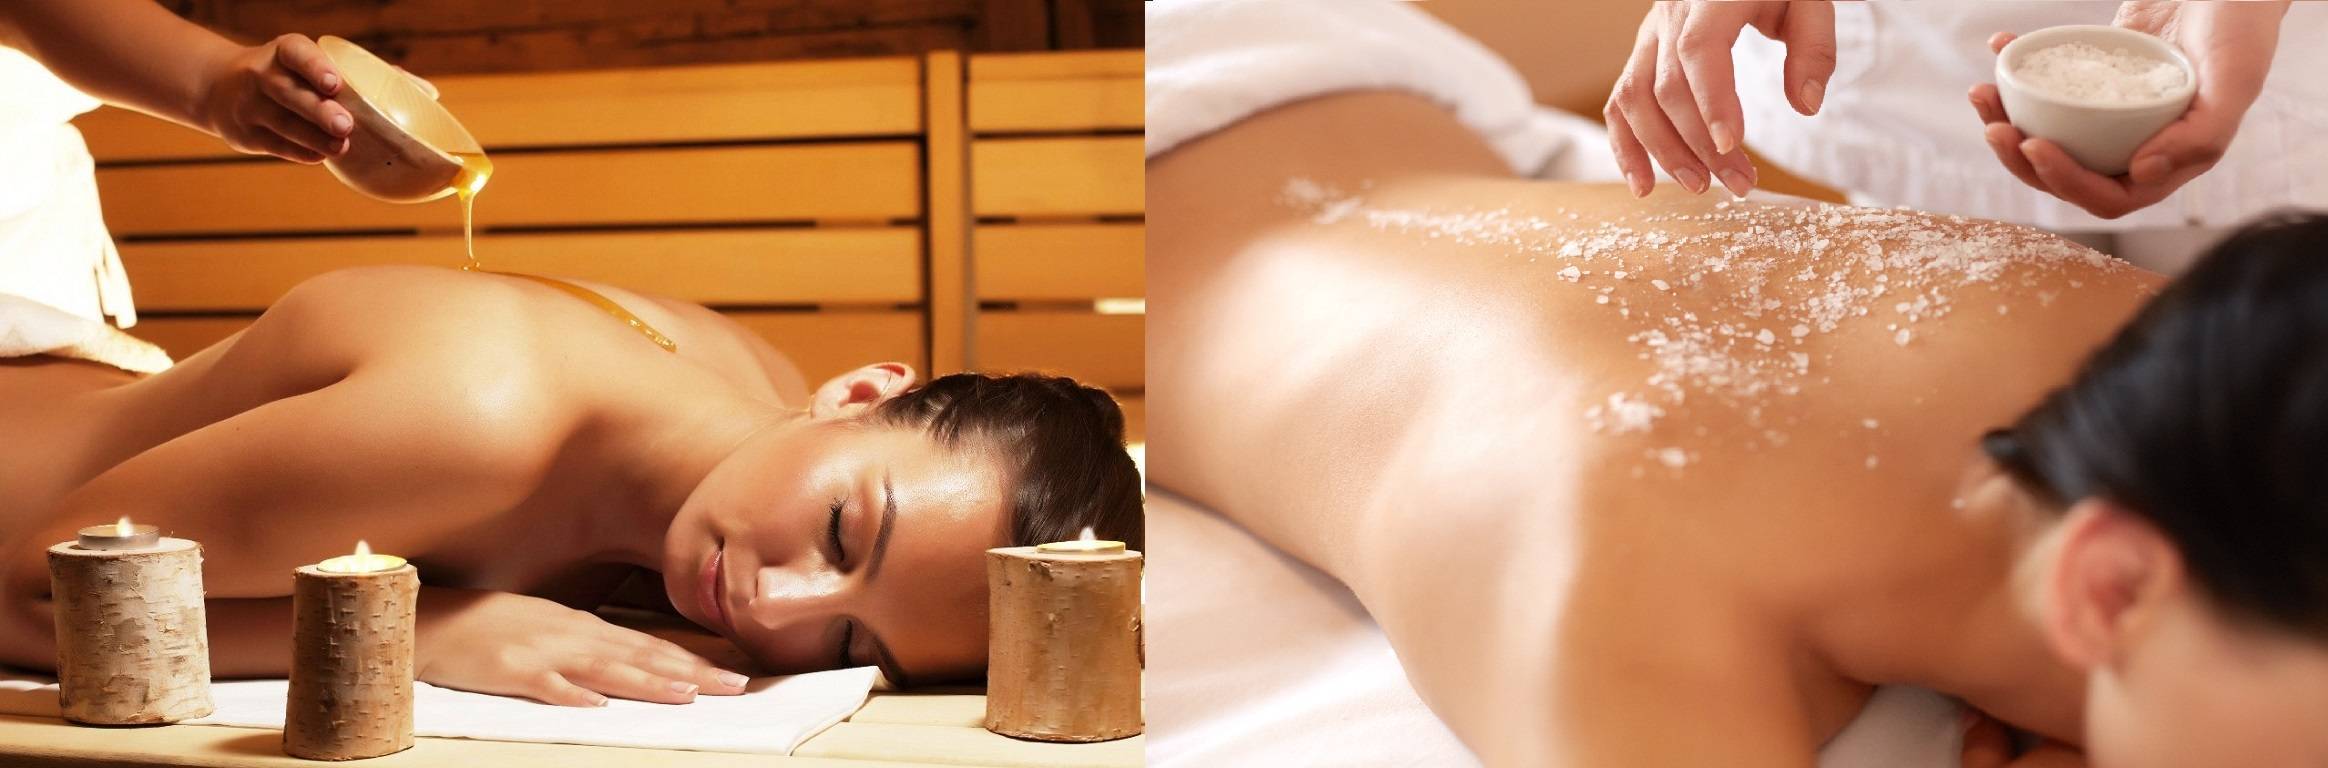 Мед в бане и сауне: как правильно использовать для тела, польза массажа и применение с солью